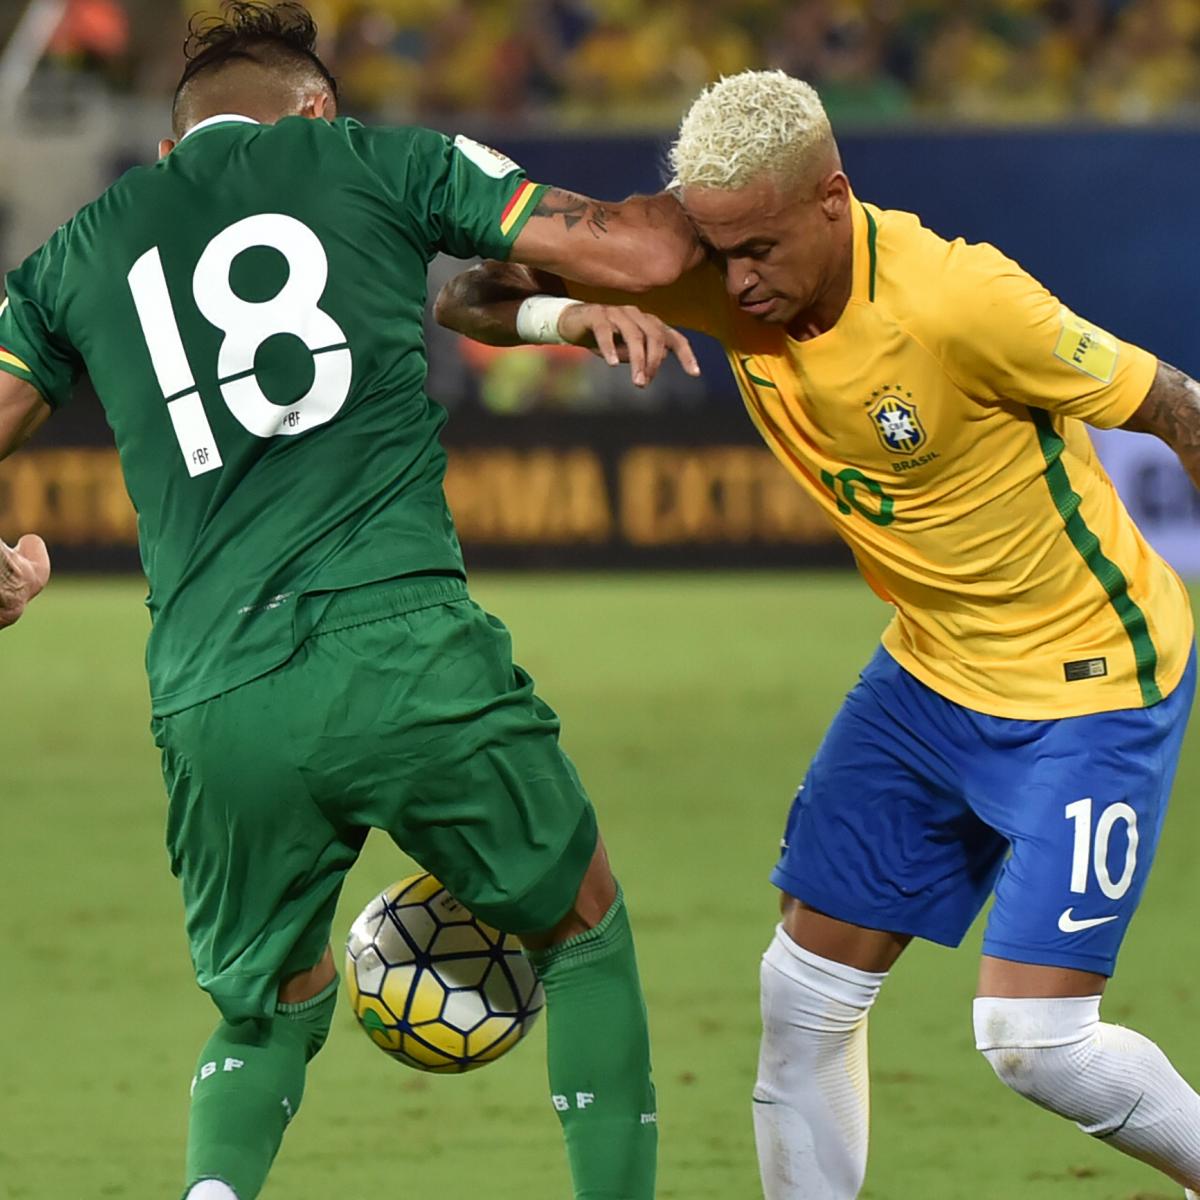 FBF informa horário especial em dias de jogos do Brasil